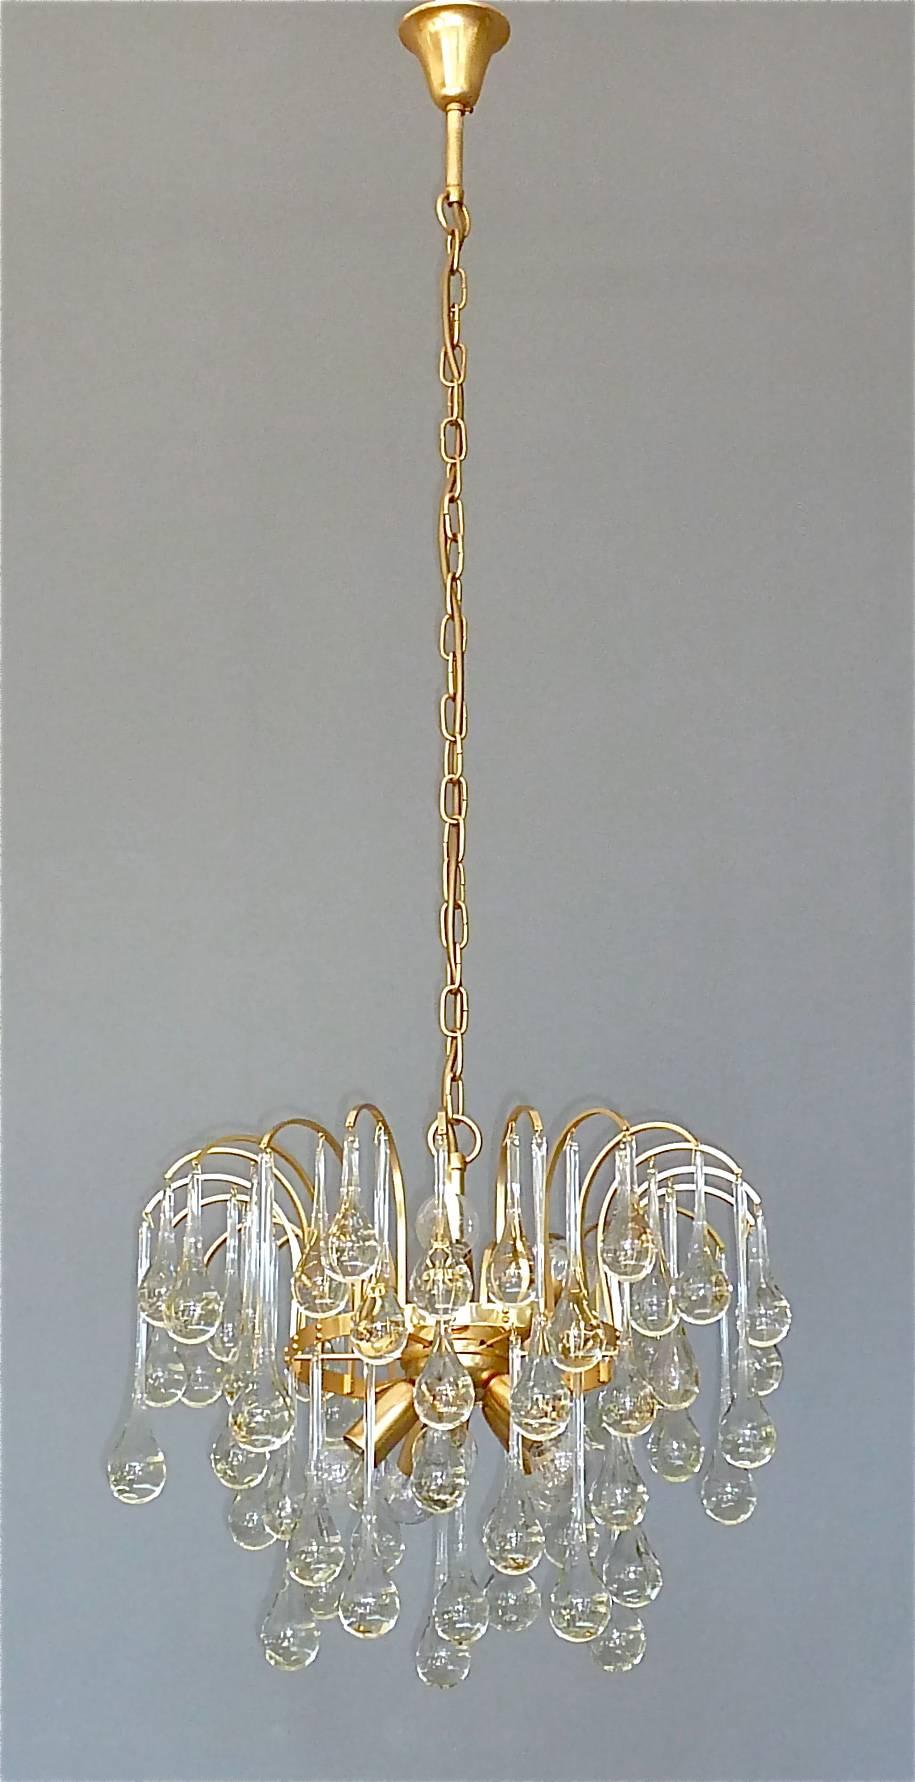 Beeindruckender großer Kronleuchter aus vergoldetem Messing und länglichen Murano-Glastropfen, Sputnik, von Christoph Palme, Deutschland, um 1960-1970. Der an einer Kette hängende und in der Länge verstellbare Kronleuchter hat eine